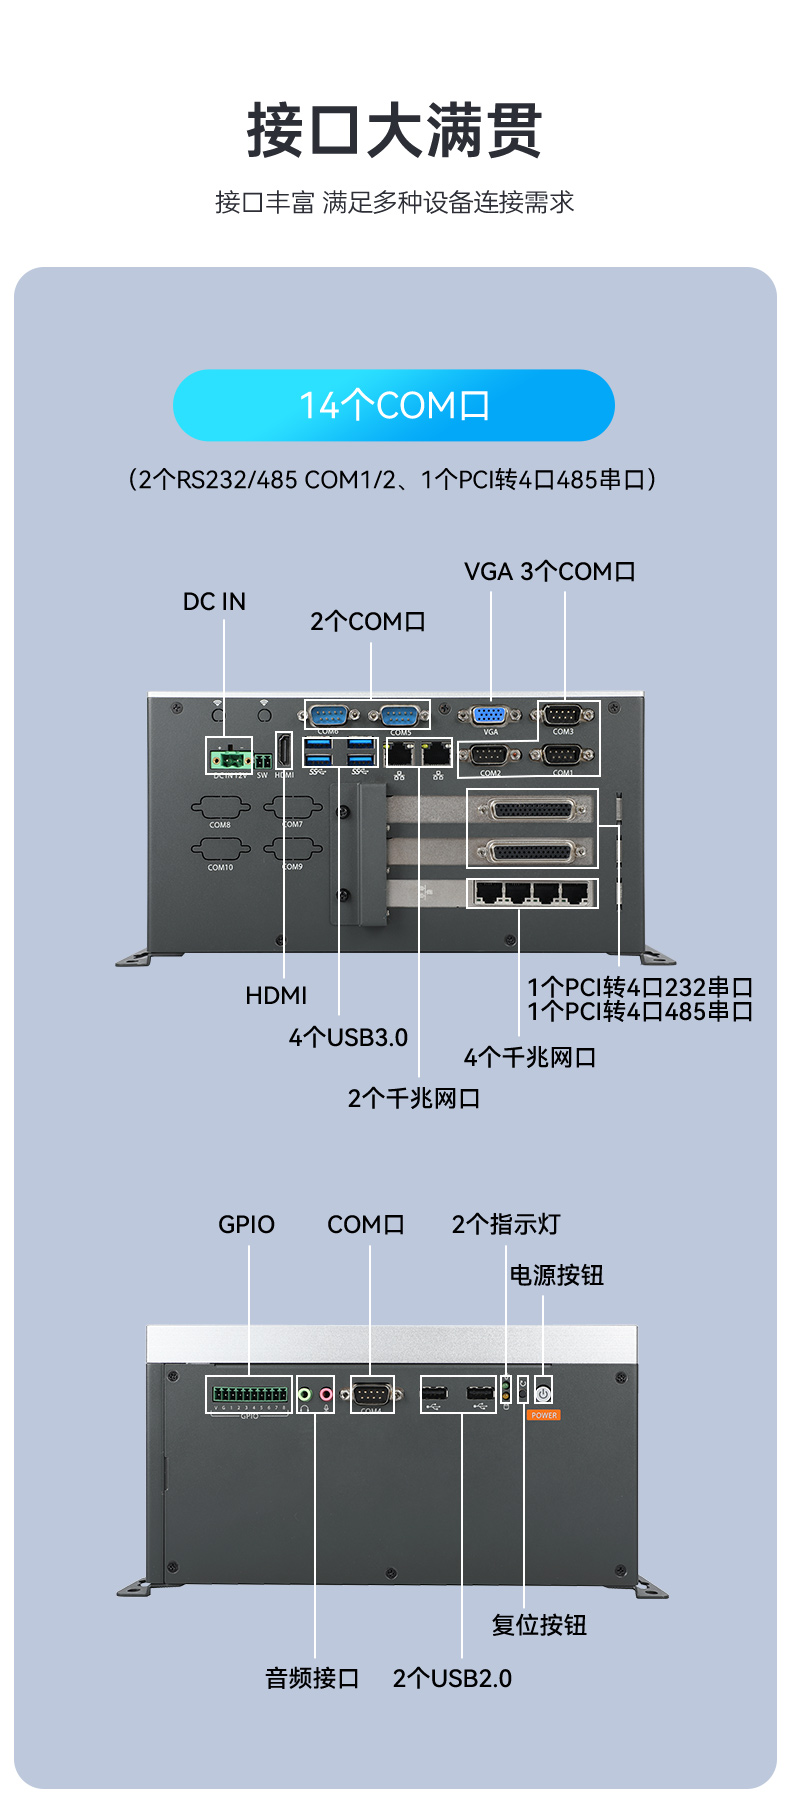 酷睿11代嵌入式无风扇工控机,可扩展工业电脑,DTB-3026K-1165.jpg